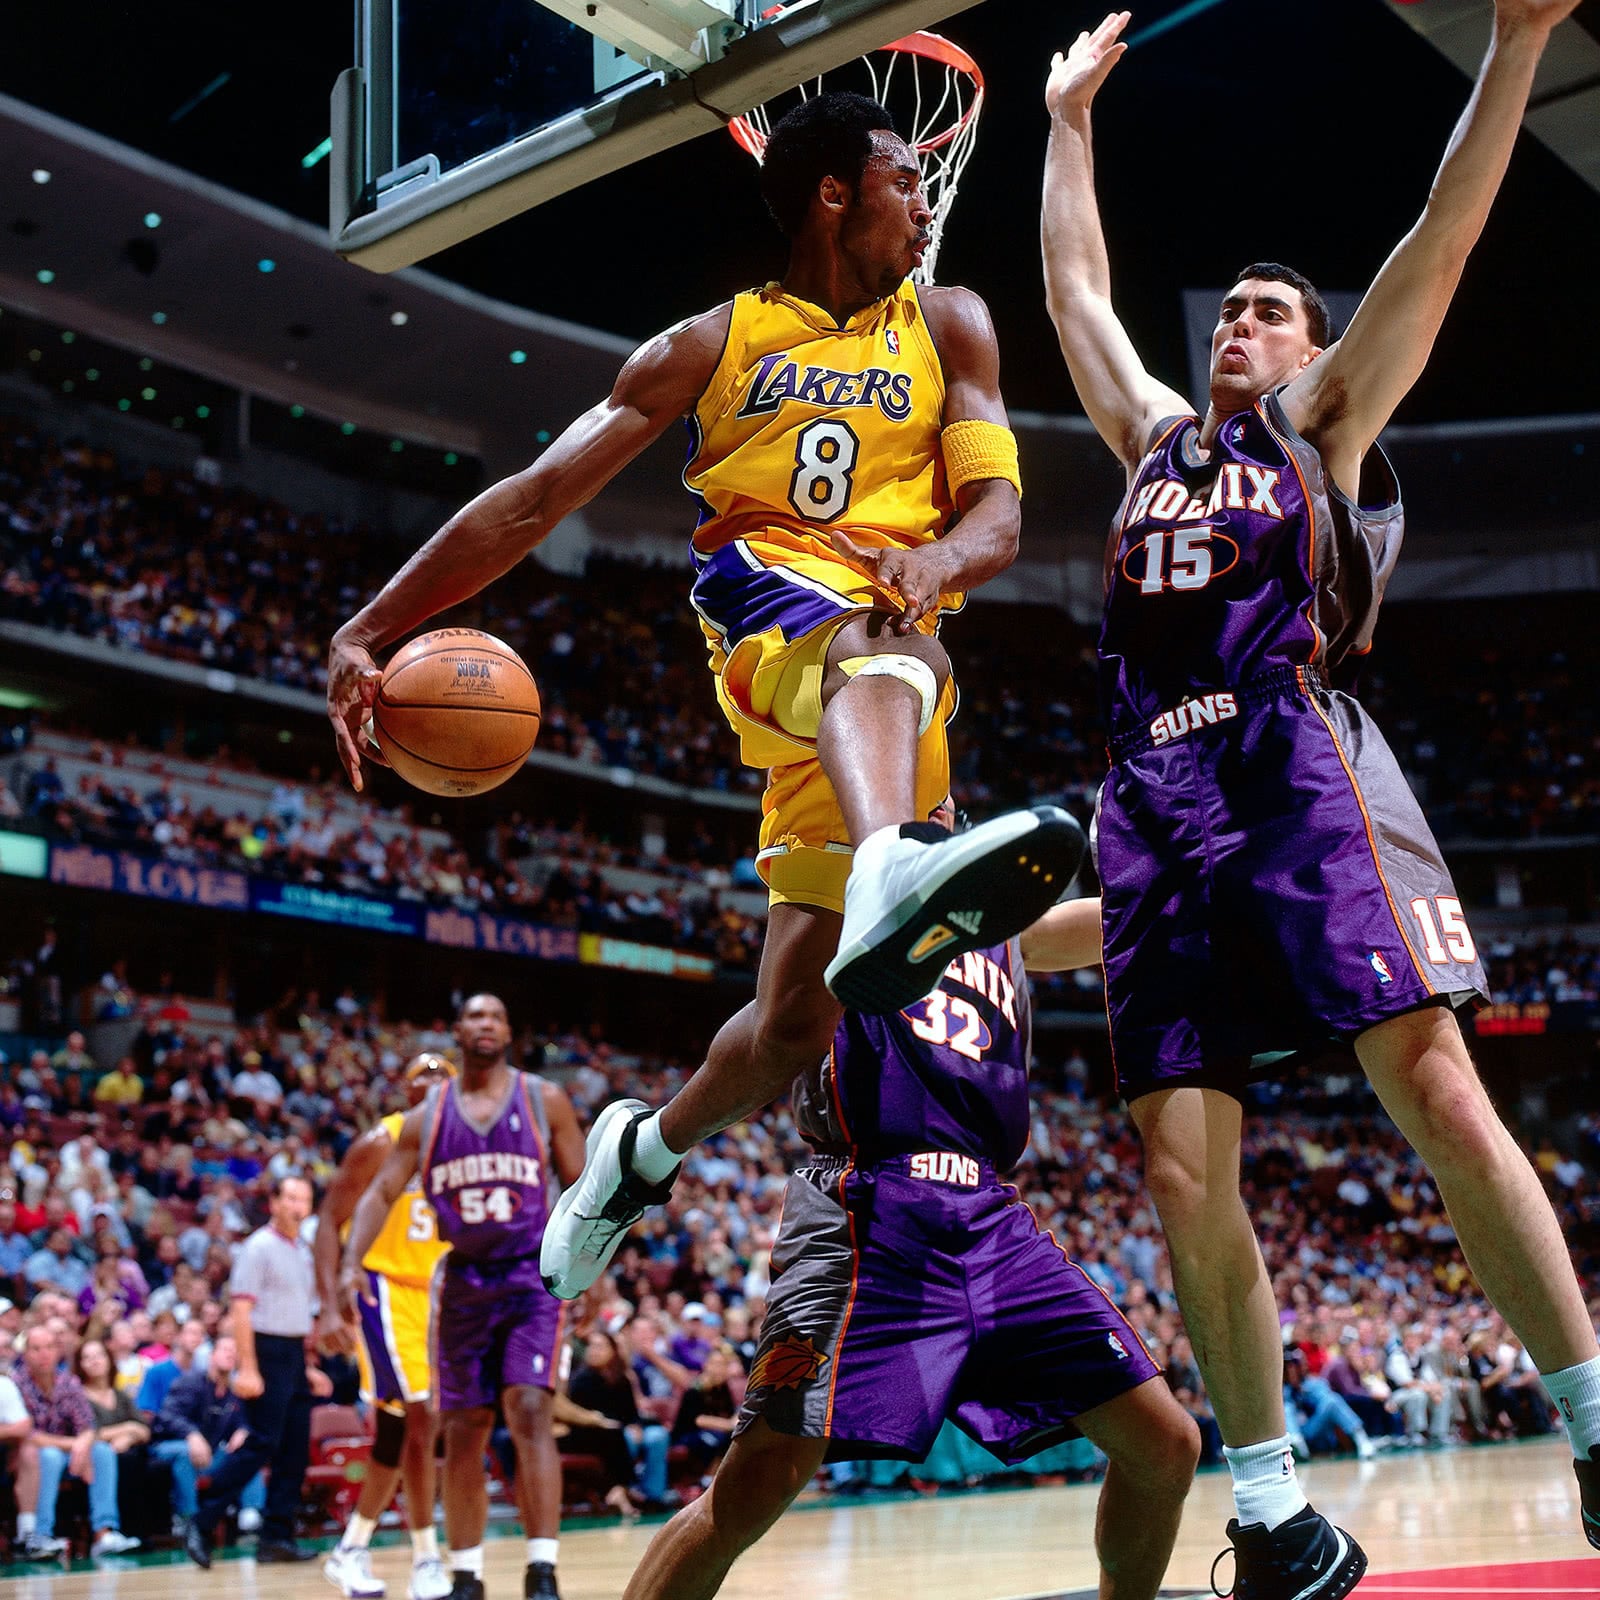 Kobe Bryant wearing the Kobe Crazy 1